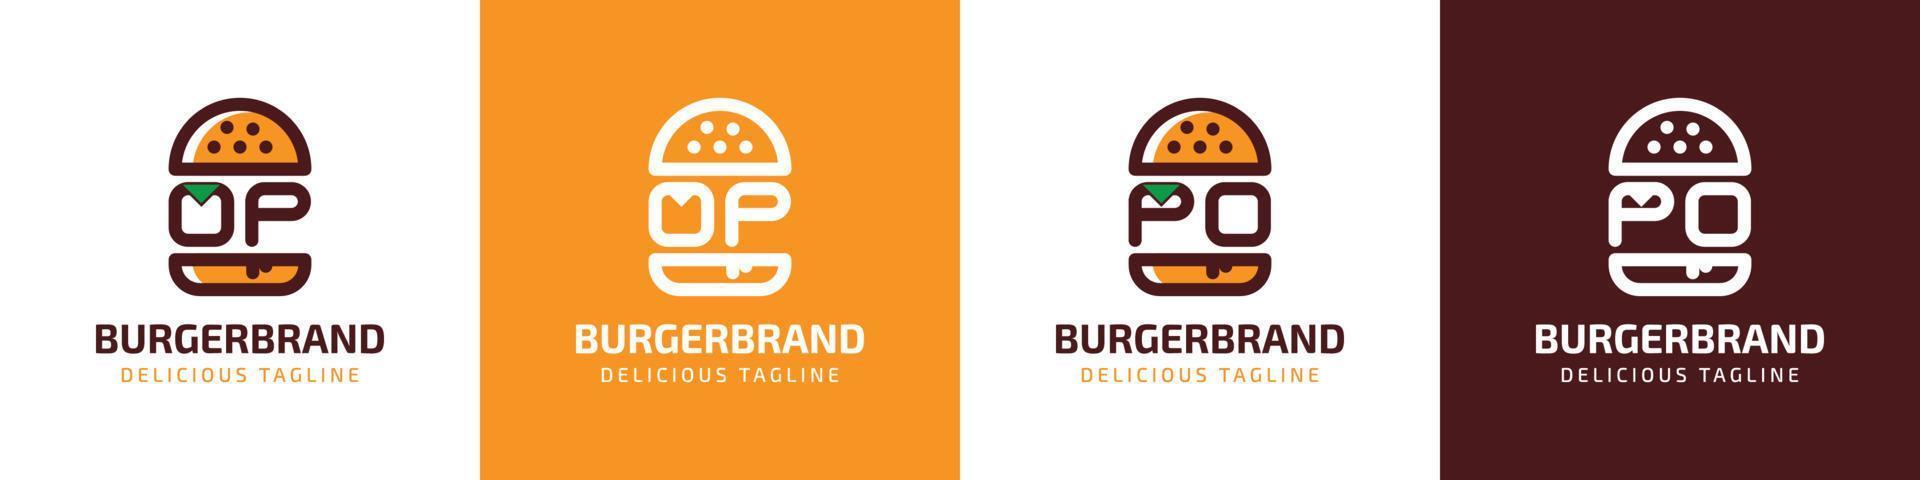 carta op e po hamburguer logotipo, adequado para qualquer o negócio relacionado para hamburguer com op ou po iniciais. vetor